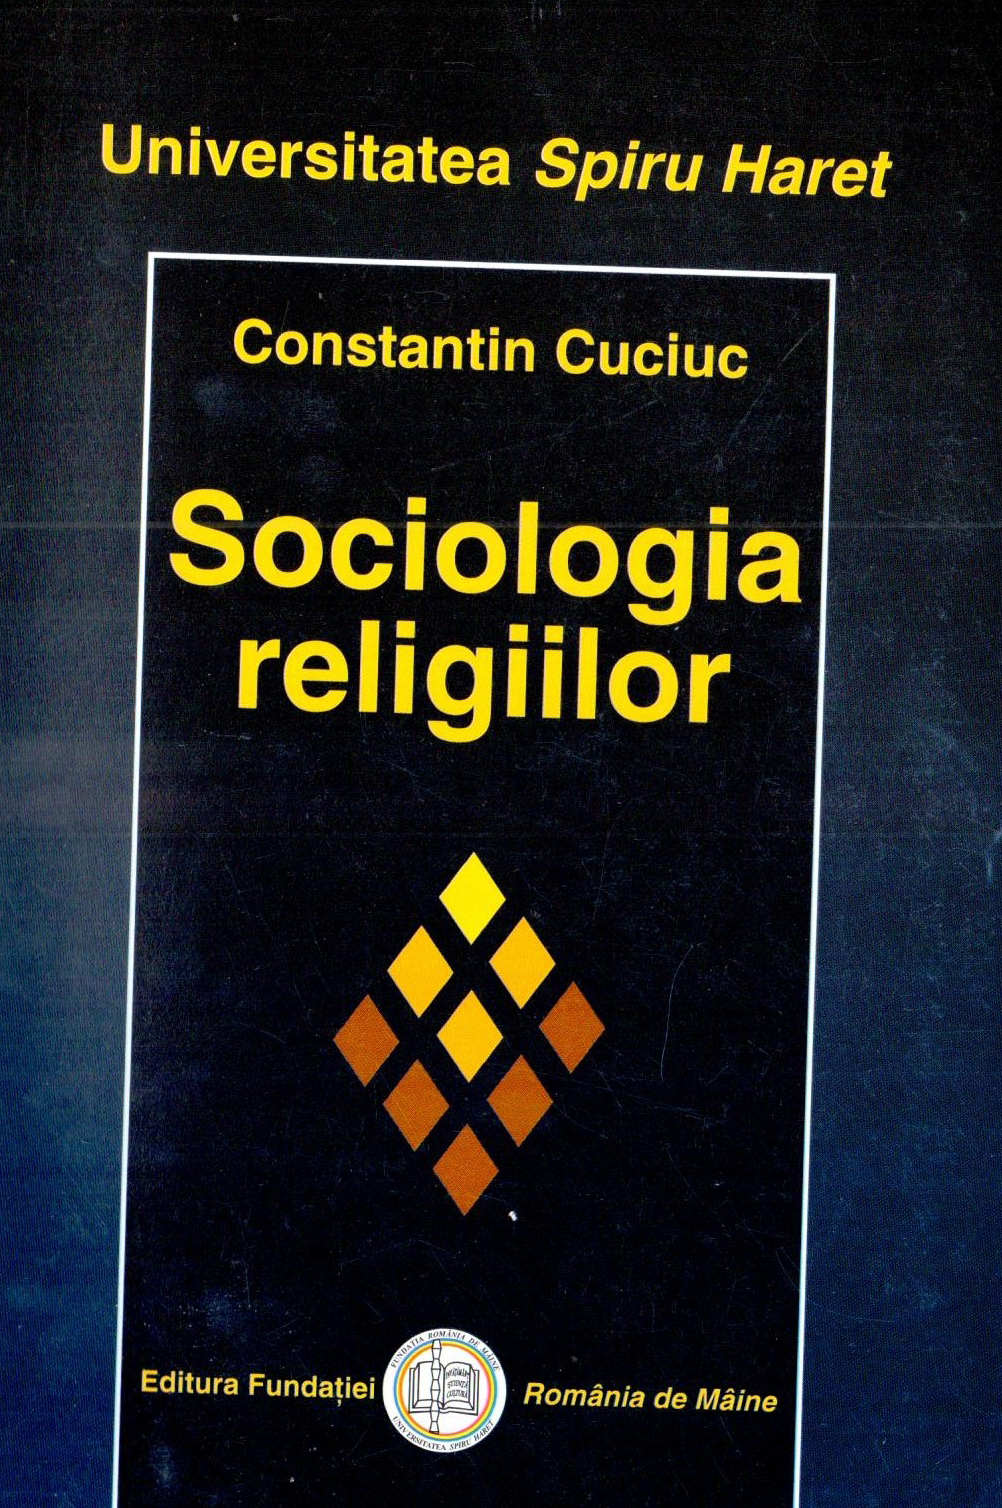 Sociologia religiilor | Constantin Cuciuc carturesti.ro imagine 2022